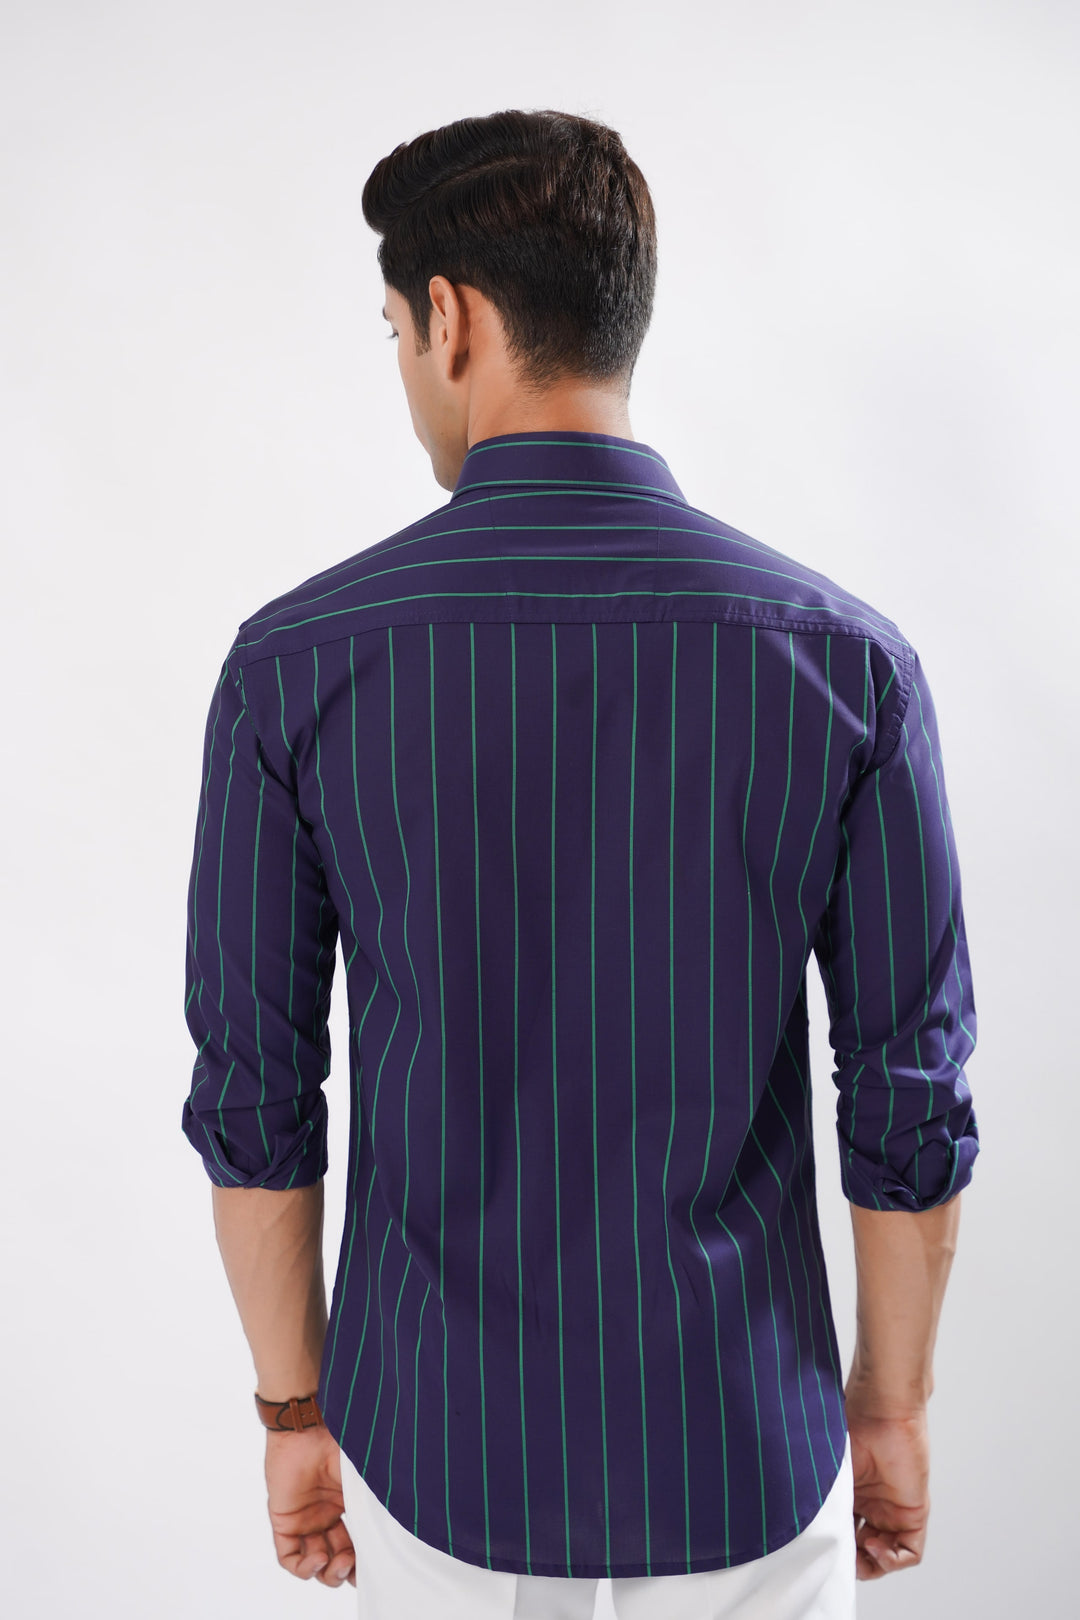 Copperline Navy Blue Striped Cotton Premium Shirt